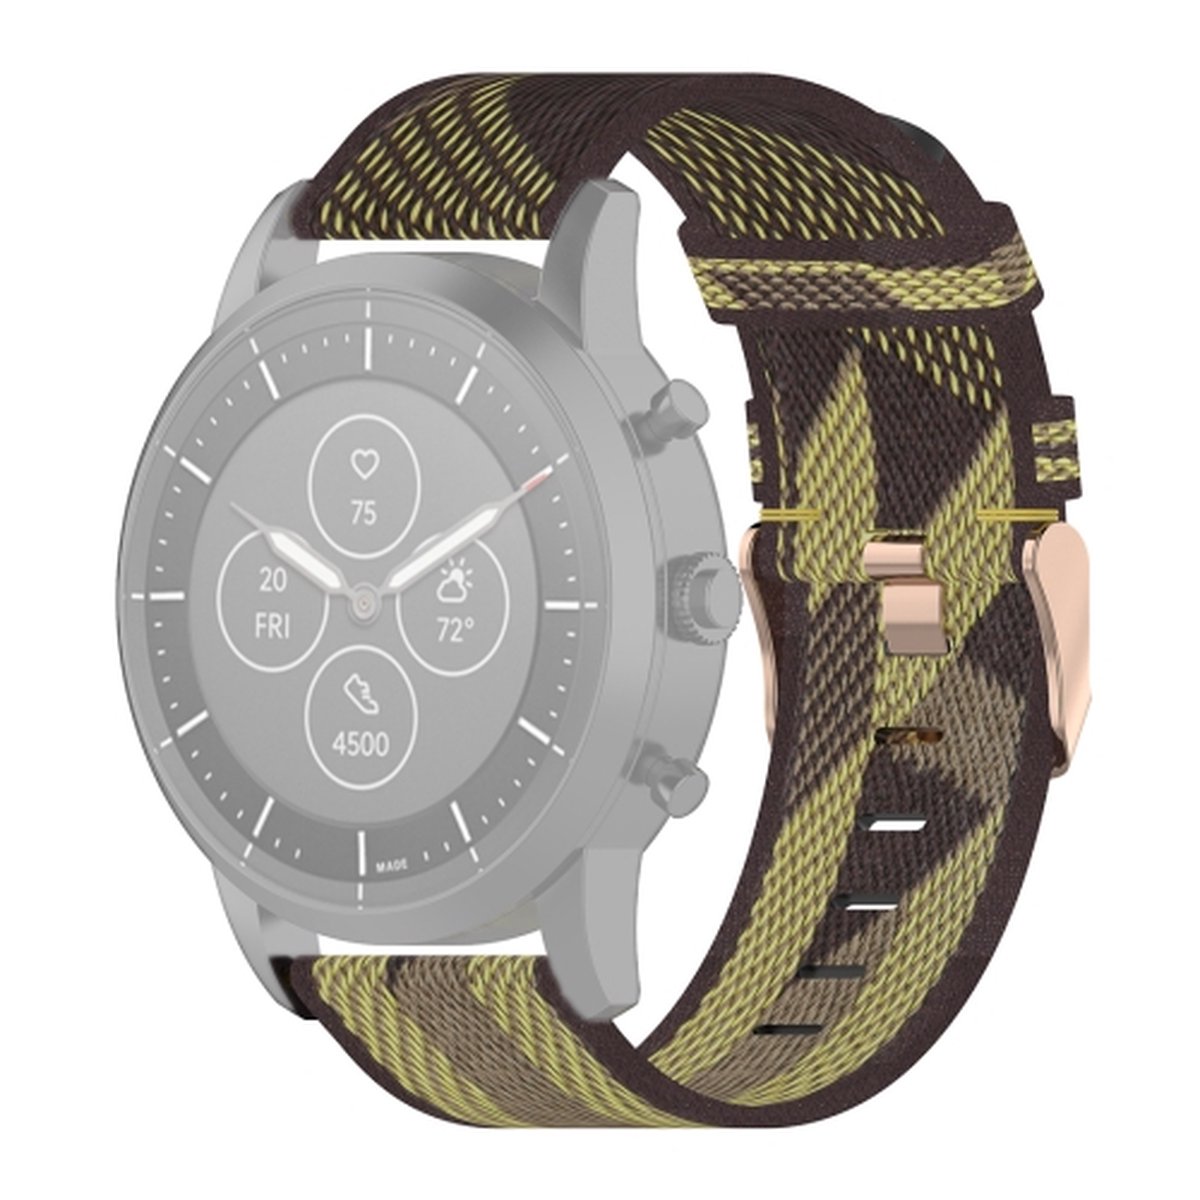 22mm streep geweven nylon polsband horlogeband voor fossiele hybride smartwatch HR, mannelijke gen 4 explorist HR sport (geel)